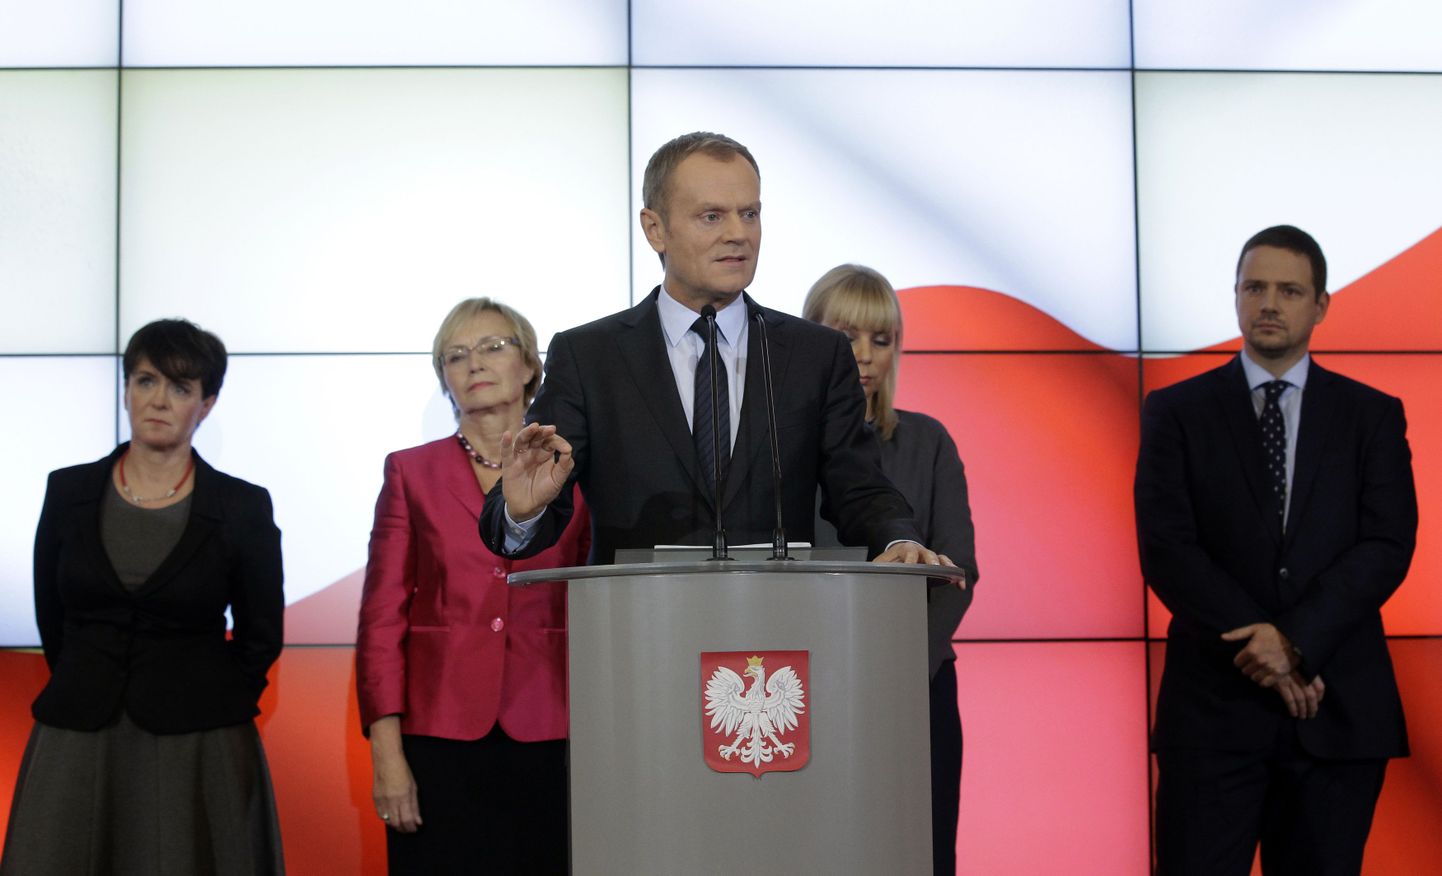 Poola peaminister Donald Tusk (ees) esitles tänasel pressikonverentsil uut valitsust.